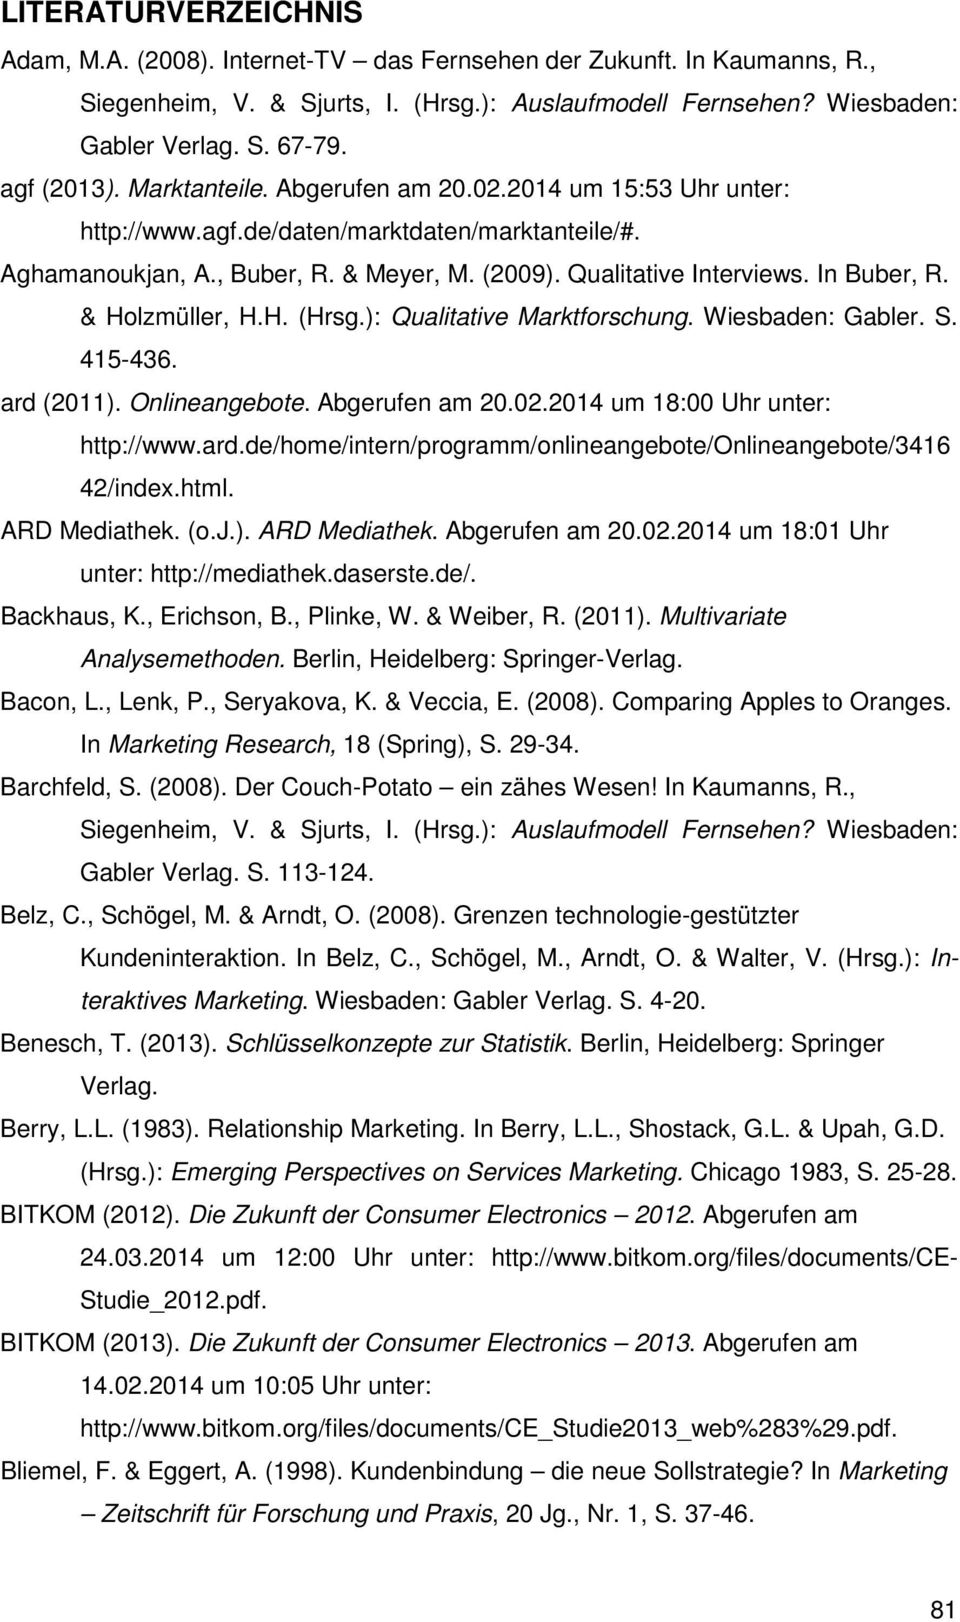 In Buber, R. & Holzmüller, H.H. (Hrsg.): Qualitative Marktforschung. Wiesbaden: Gabler. S. 415-436. ard (2011). Onlineangebote. Abgerufen am 20.02.2014 um 18:00 Uhr unter: http://www.ard.de/home/intern/programm/onlineangebote/onlineangebote/3416 42/index.